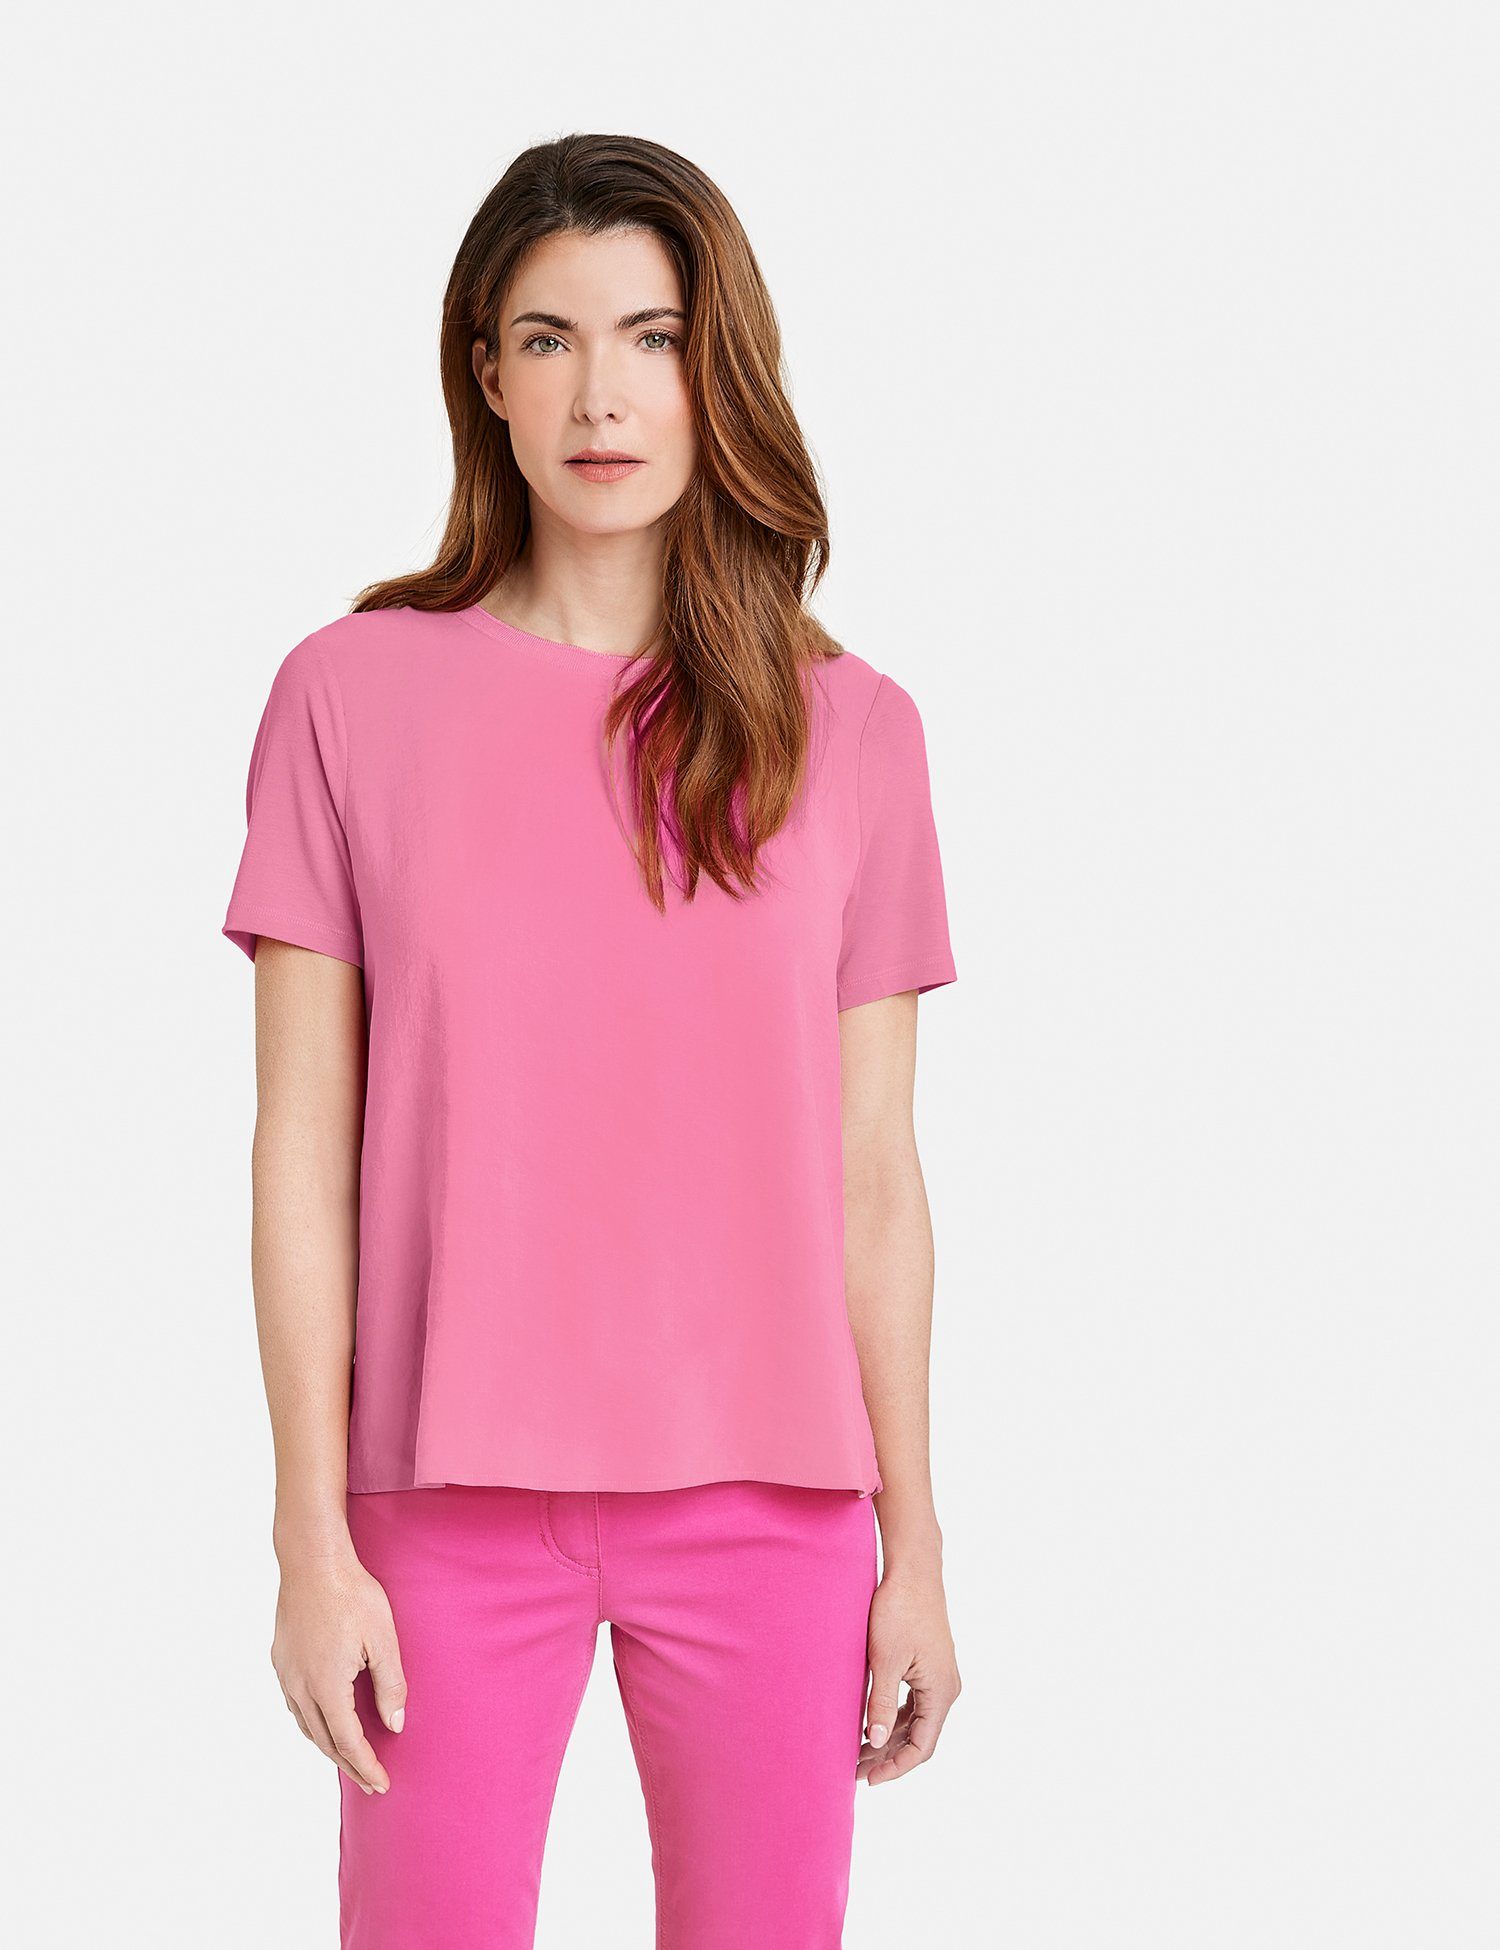 T-Shirt Soft mit Pink Basic Kurzarmshirt GERRY WEBER Material-Patch